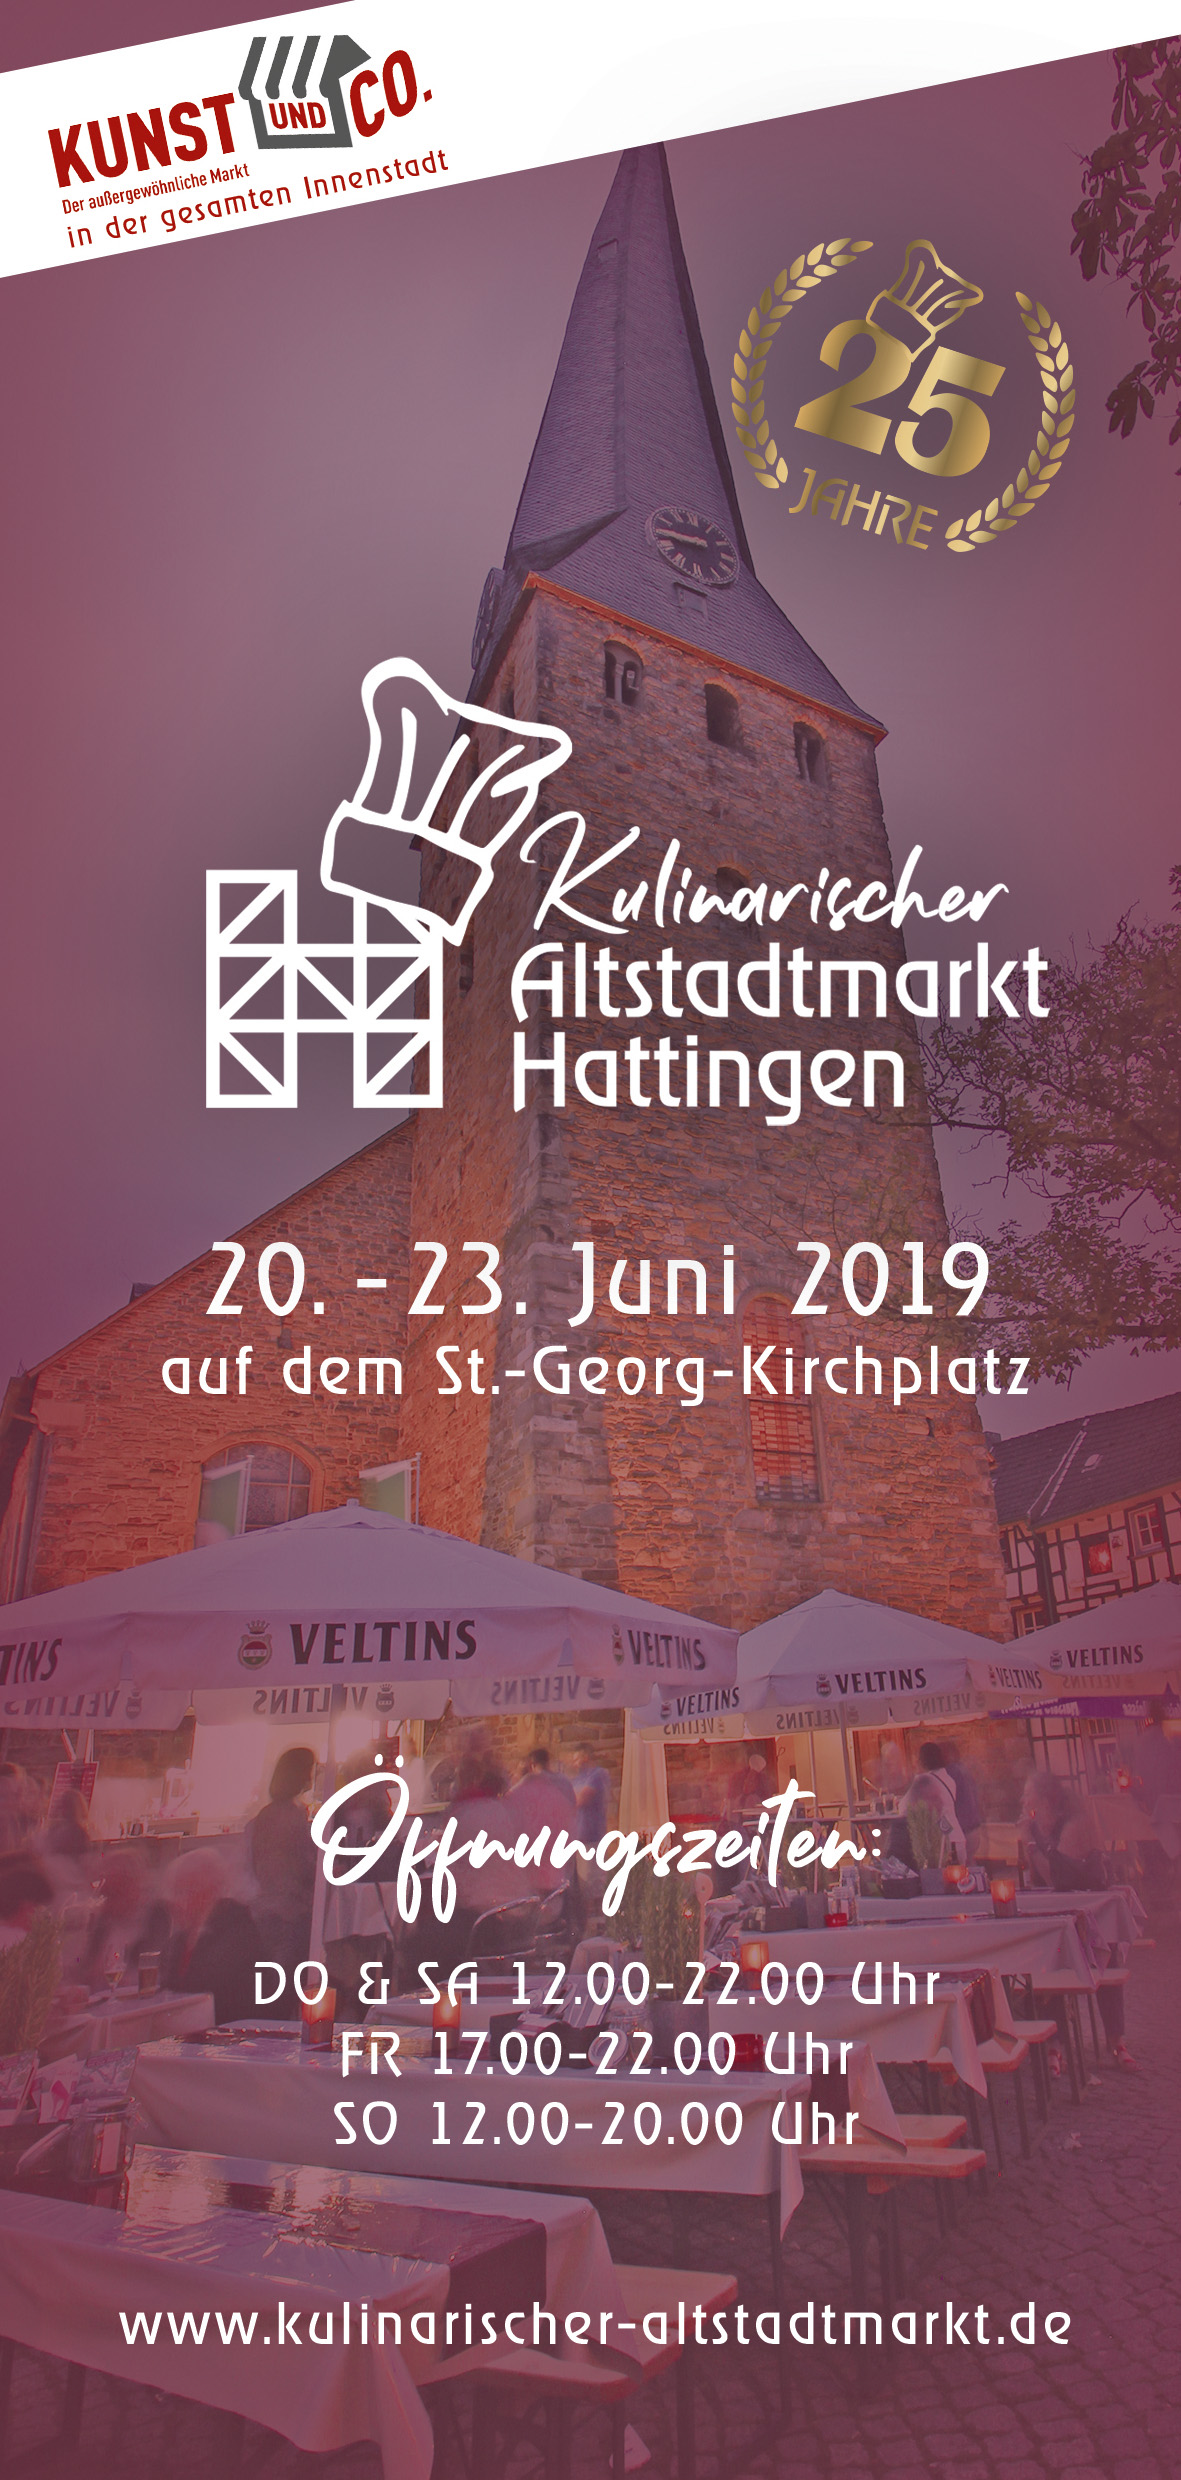 Kulinarischer Altstadtmarkt Hattingen 2019